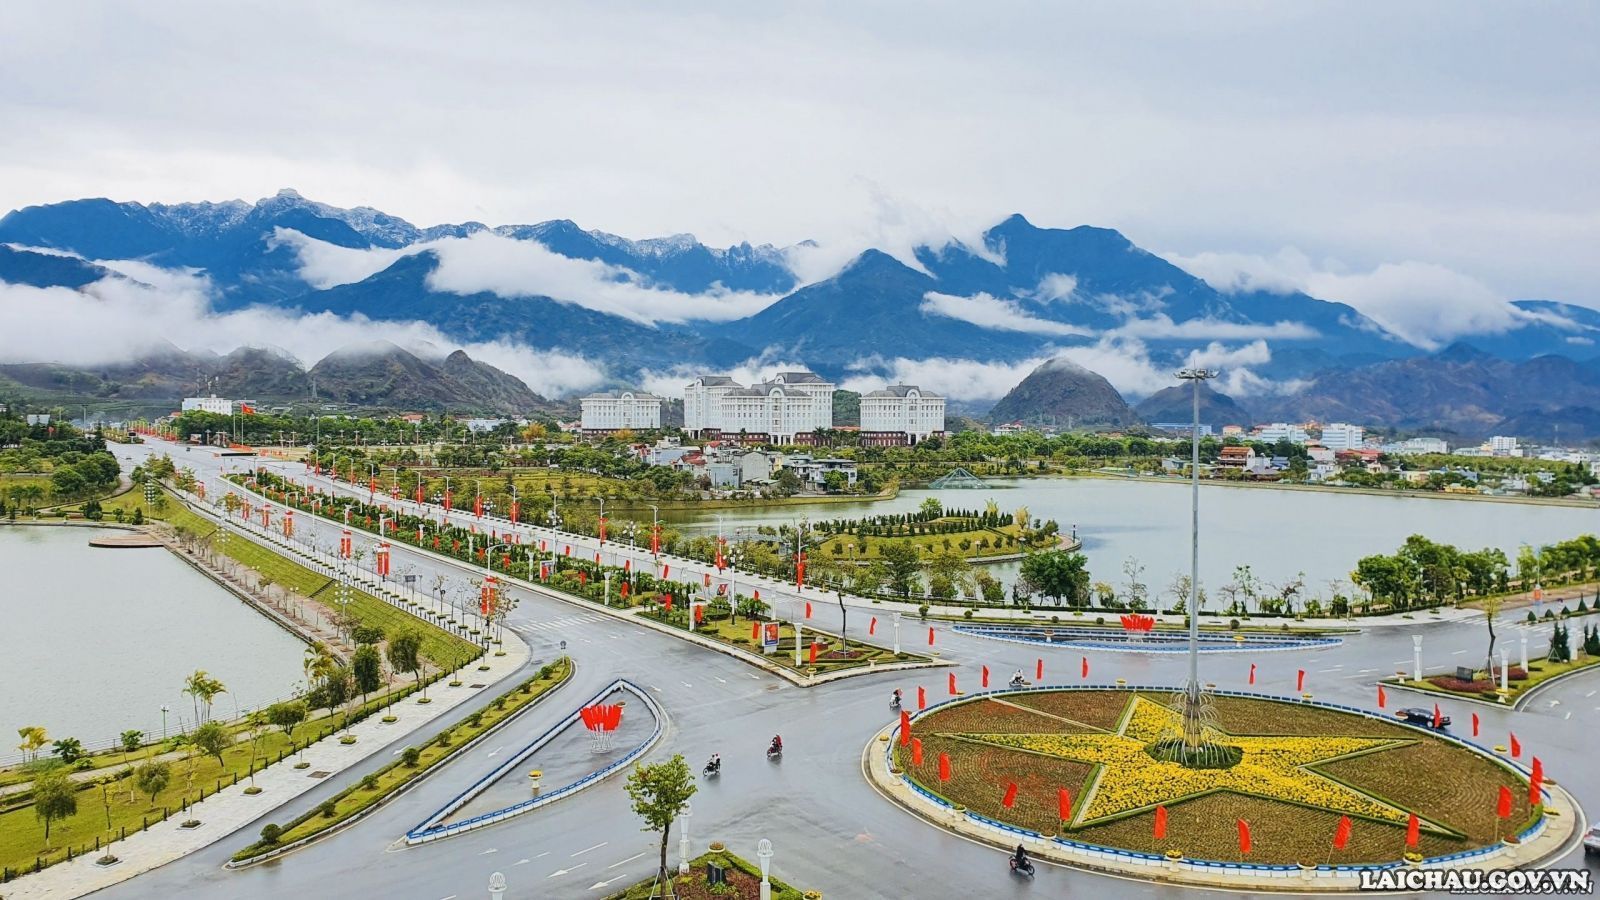 Thành phố Lai Châu nổi bật lên giữa những dãy núi trùng điệp, được bao phủ bởi những đám mây trắng tinh khôi.